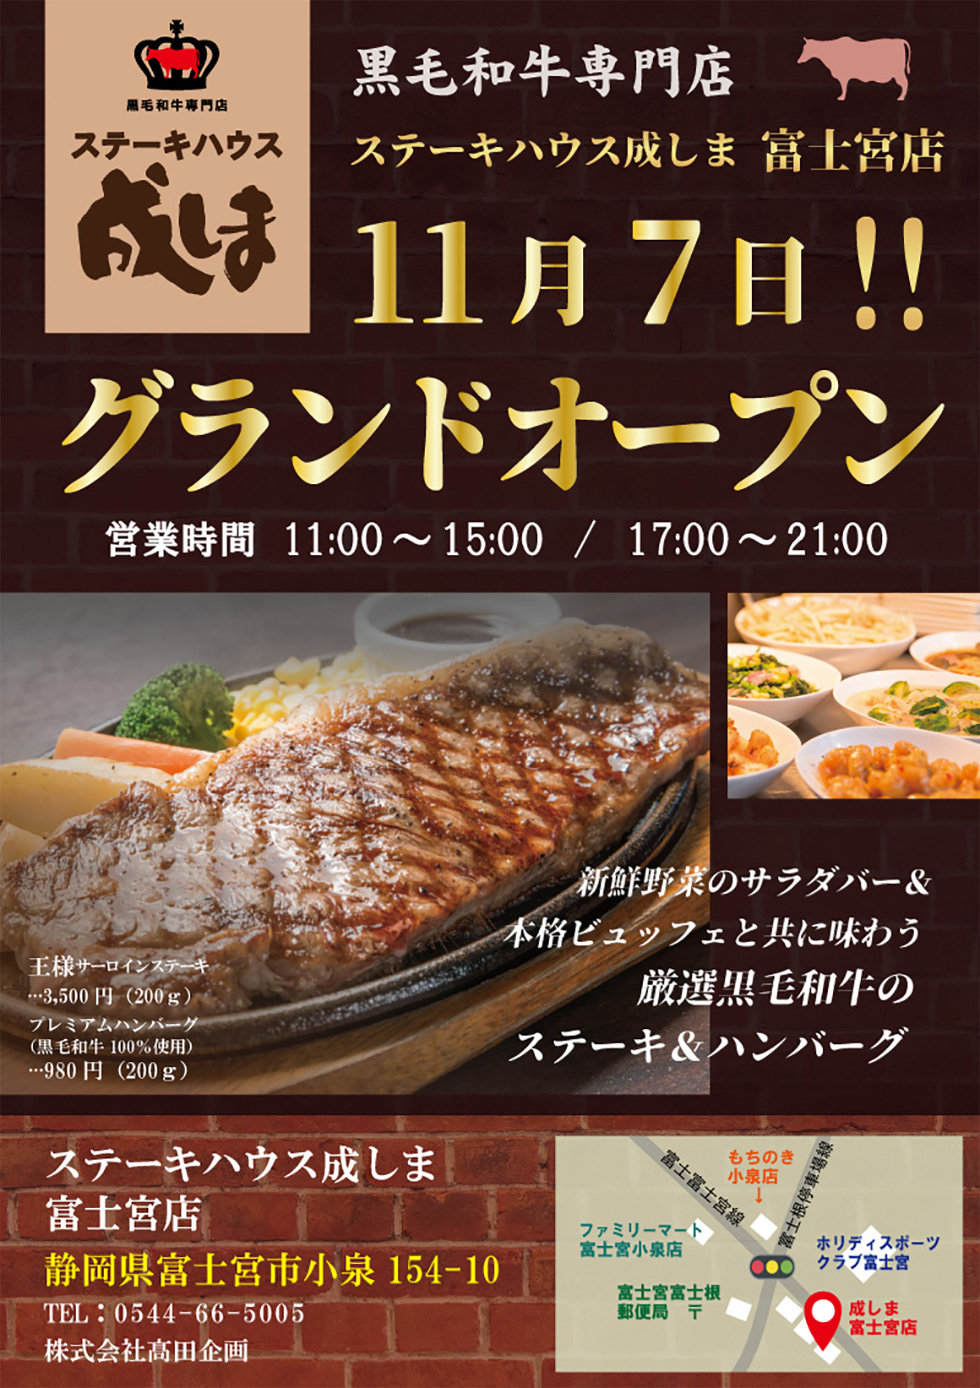 10月7日「ステーキハウス成しま」富士宮市にオープン！